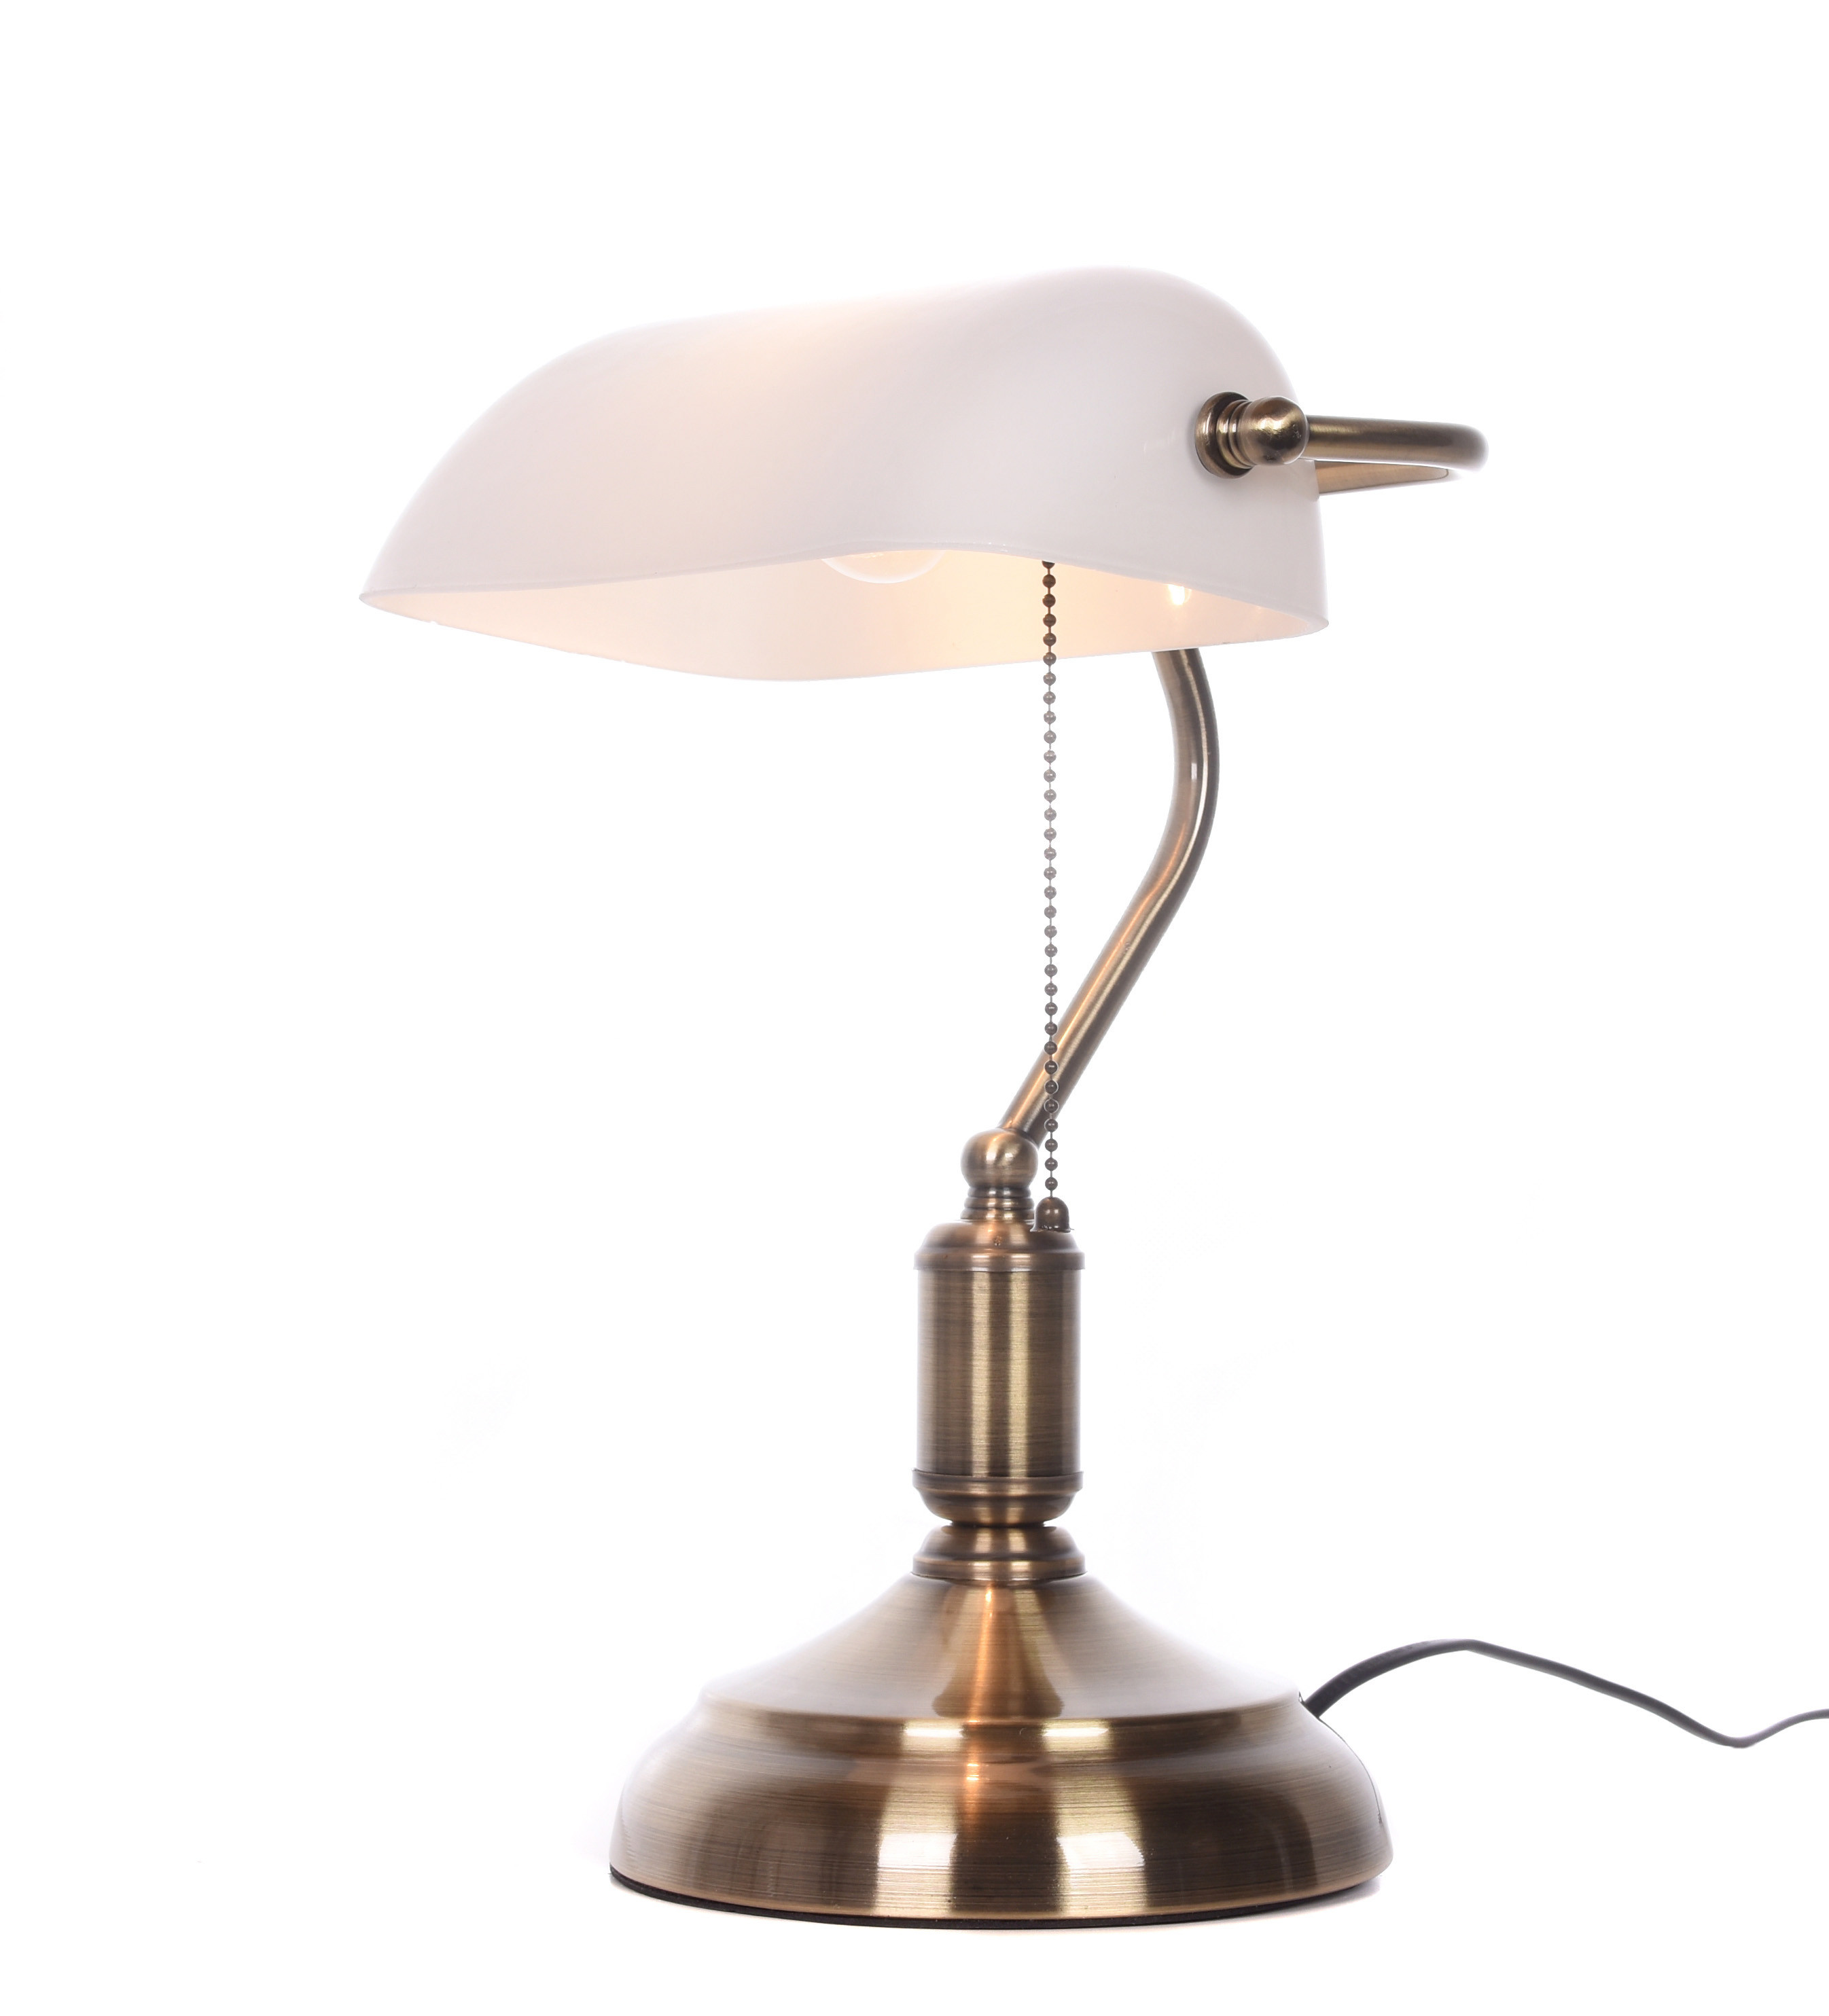 Lampa bankierska biała z mosiężnymi akcentami do gabinetu, elegancka BANKER CLASSIC - Lumina Deco zdjęcie 1